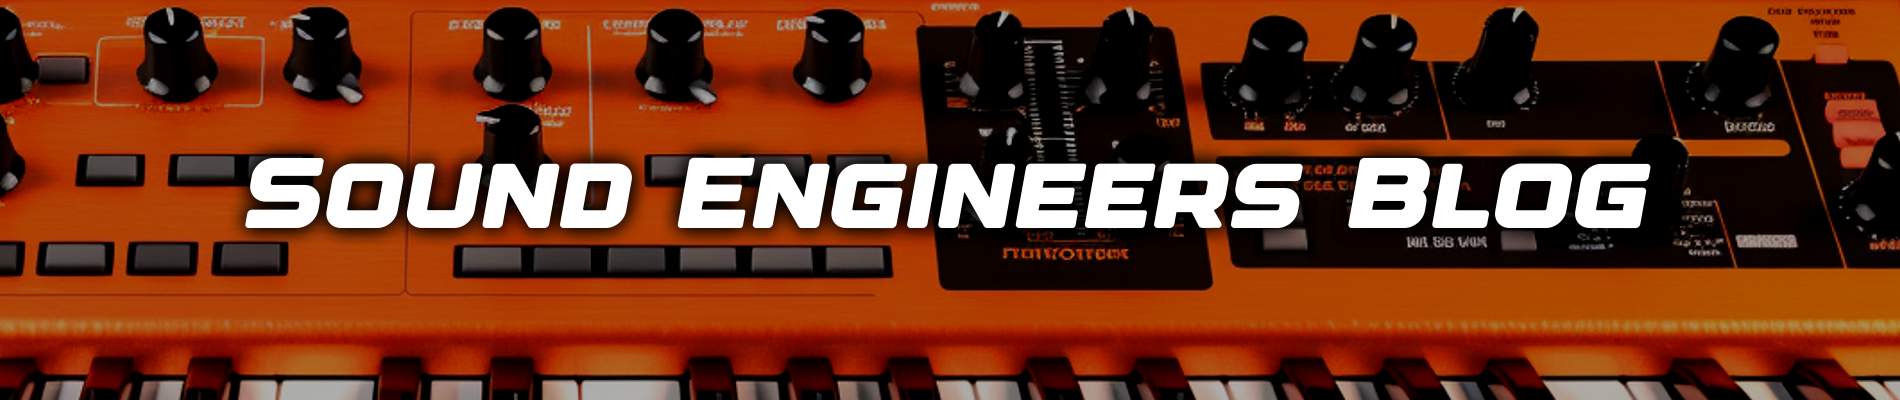 Sound Engineers Blog.